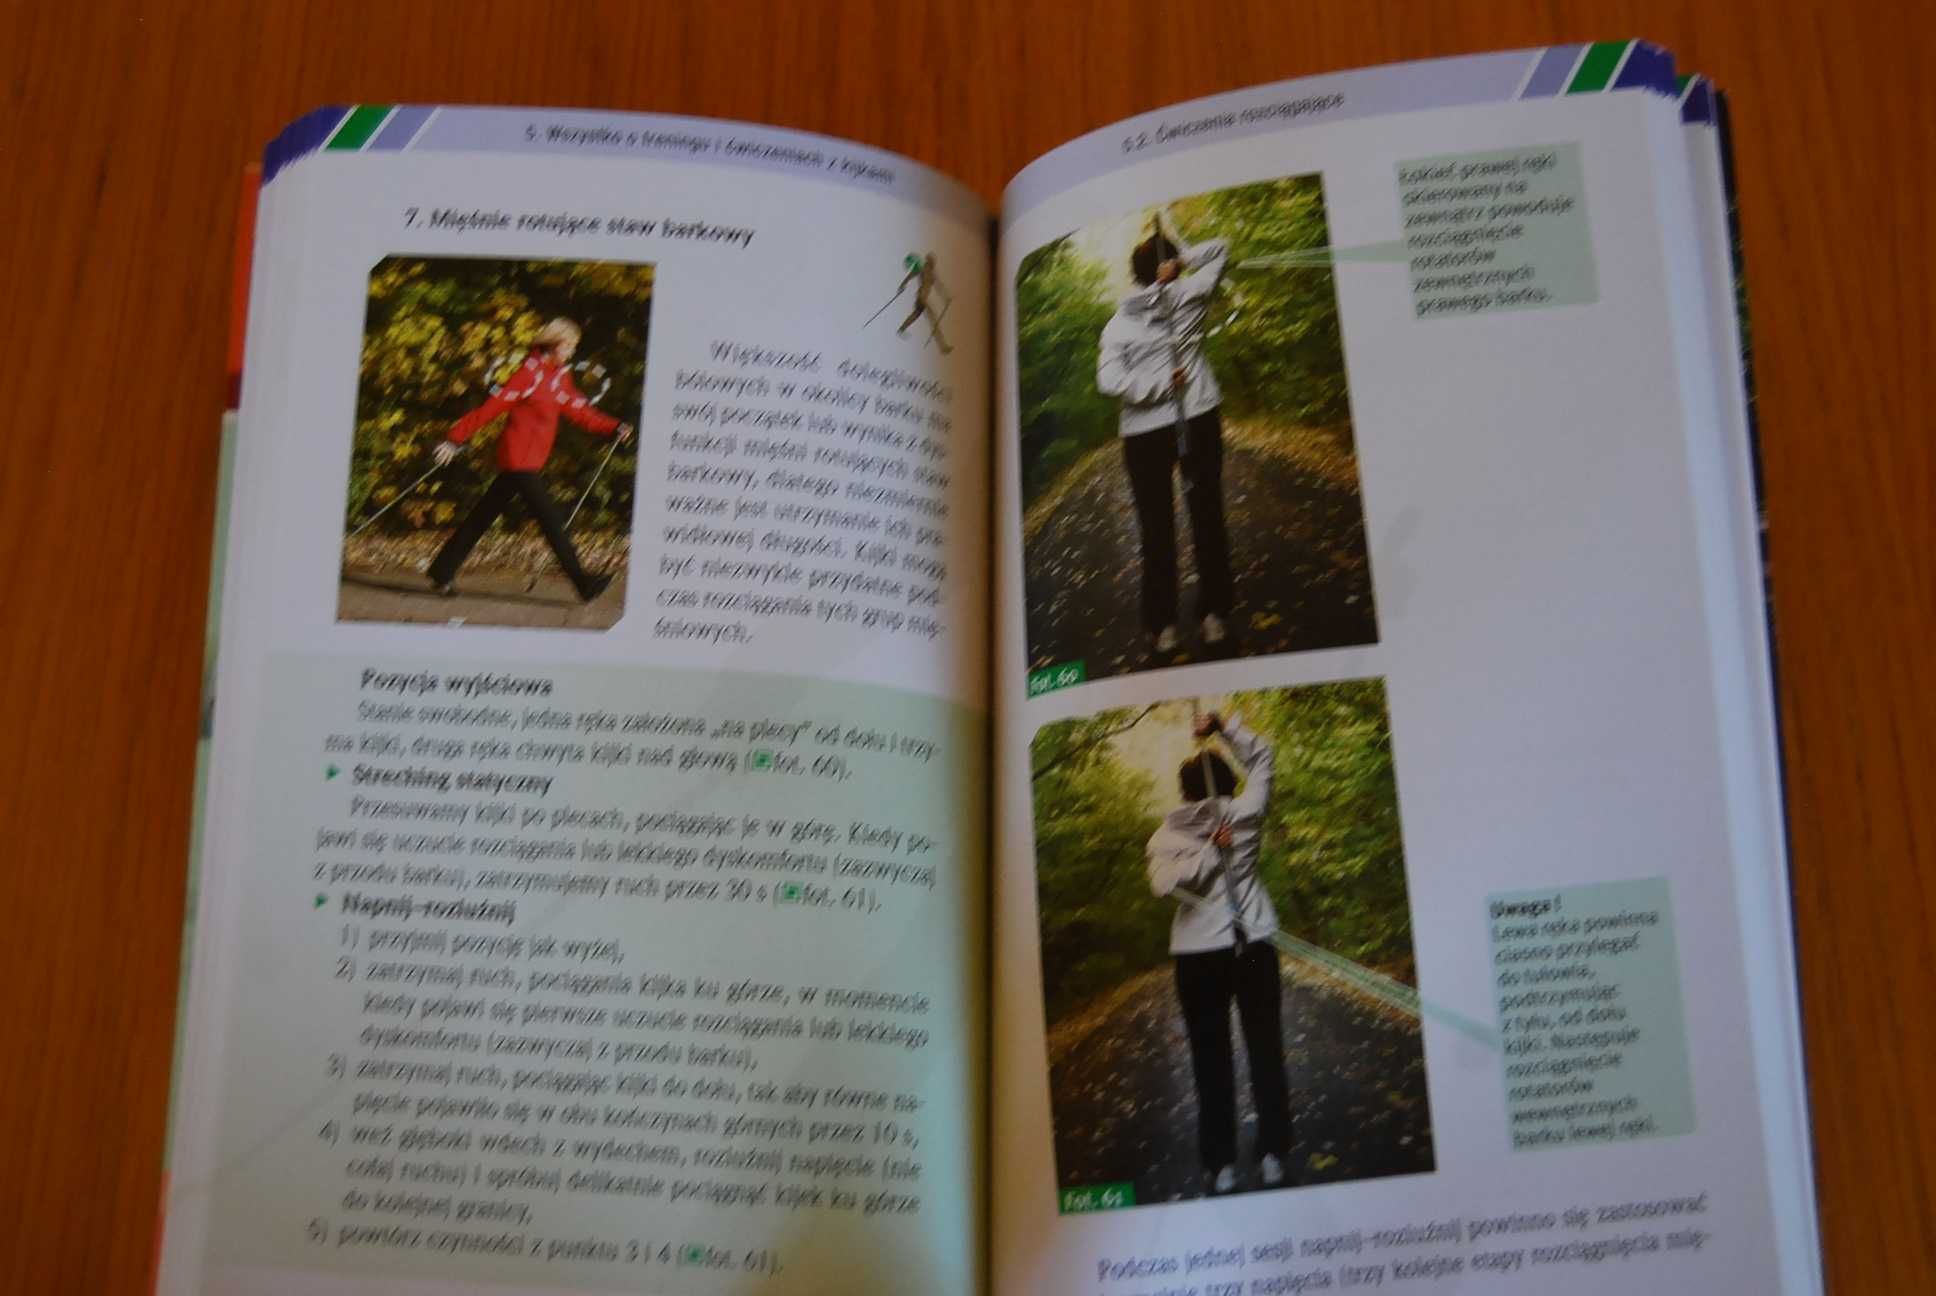 Nordic Walking. Piotr Kocur, Małgorzata Wilk, Piotr Dylewicz